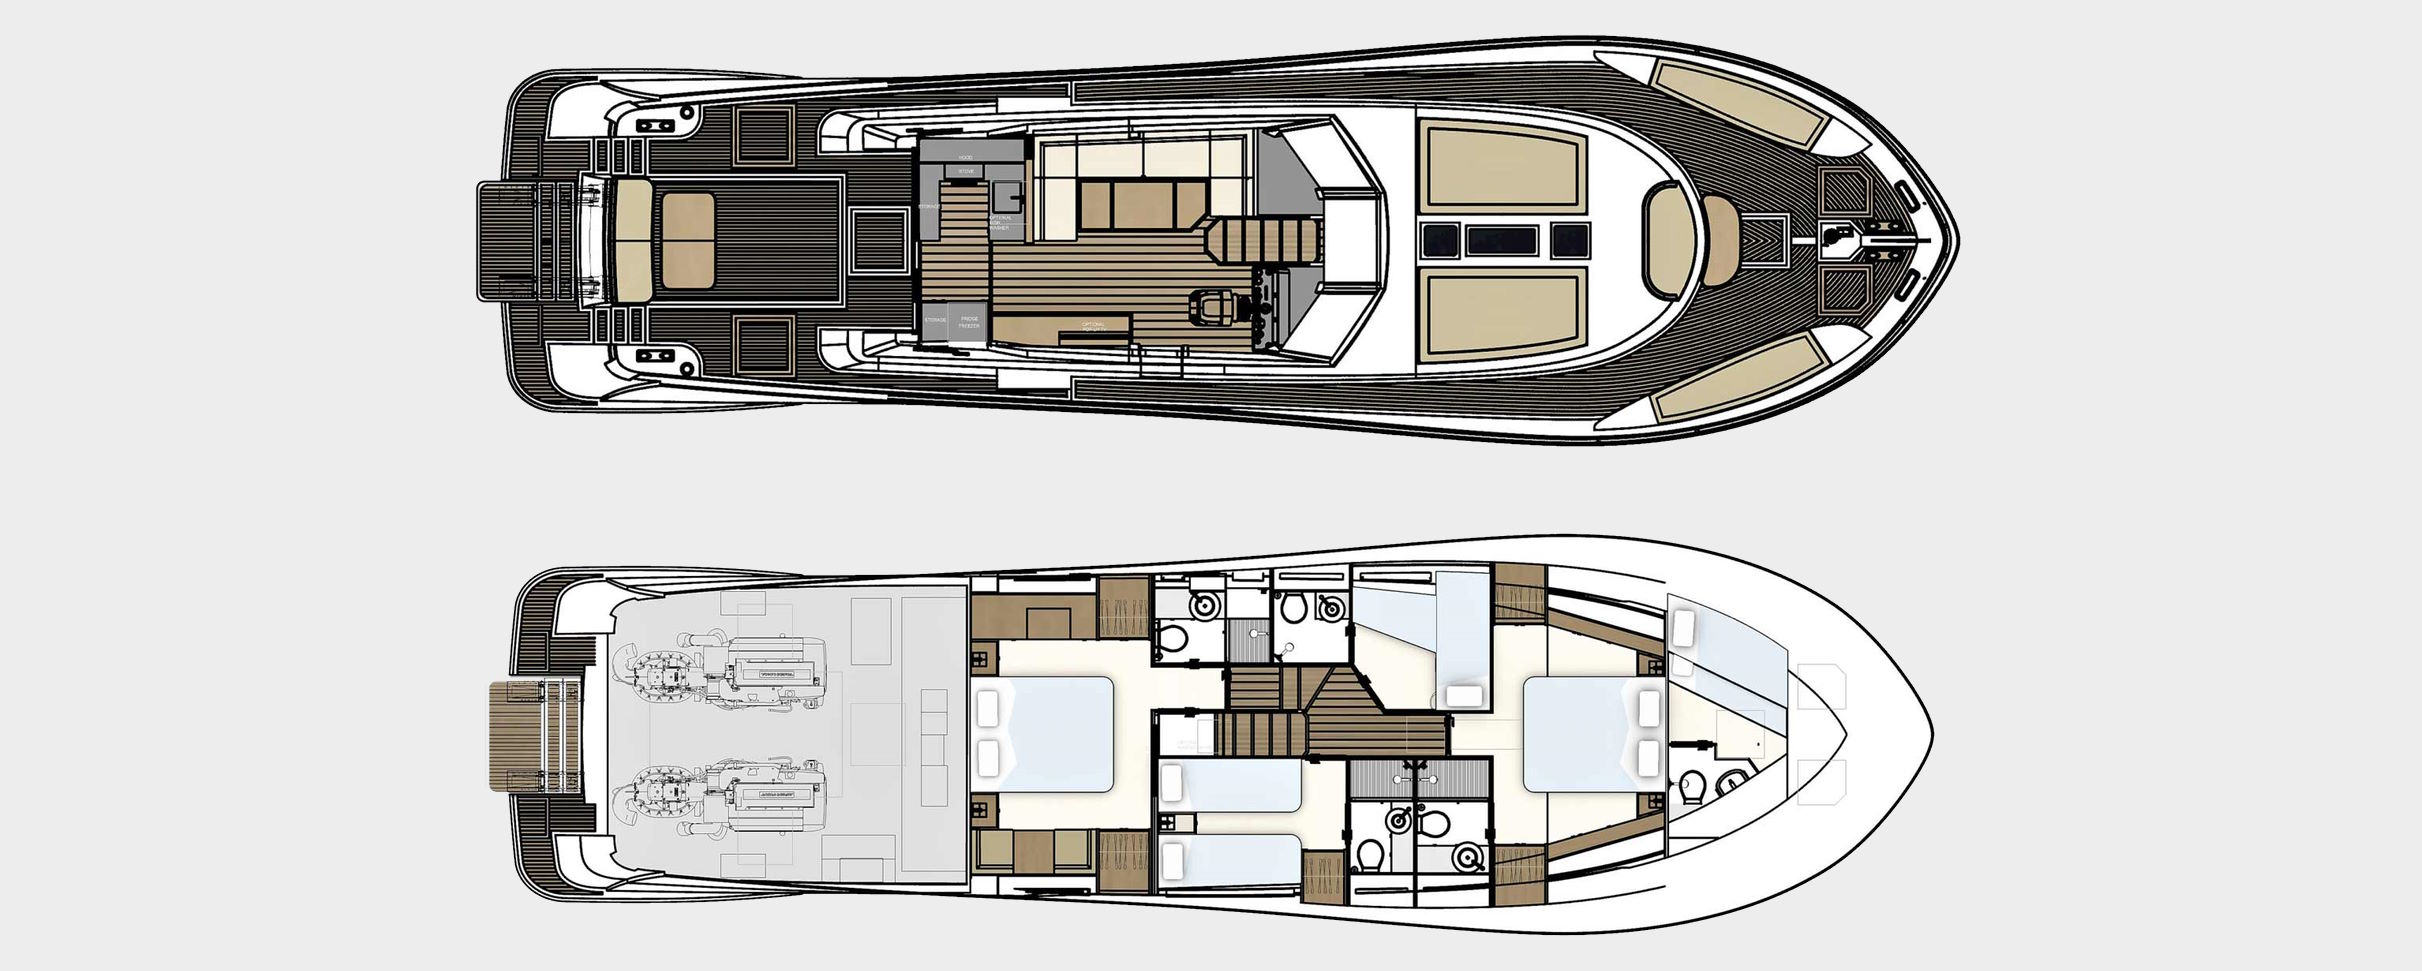 panta rei yacht charter layout